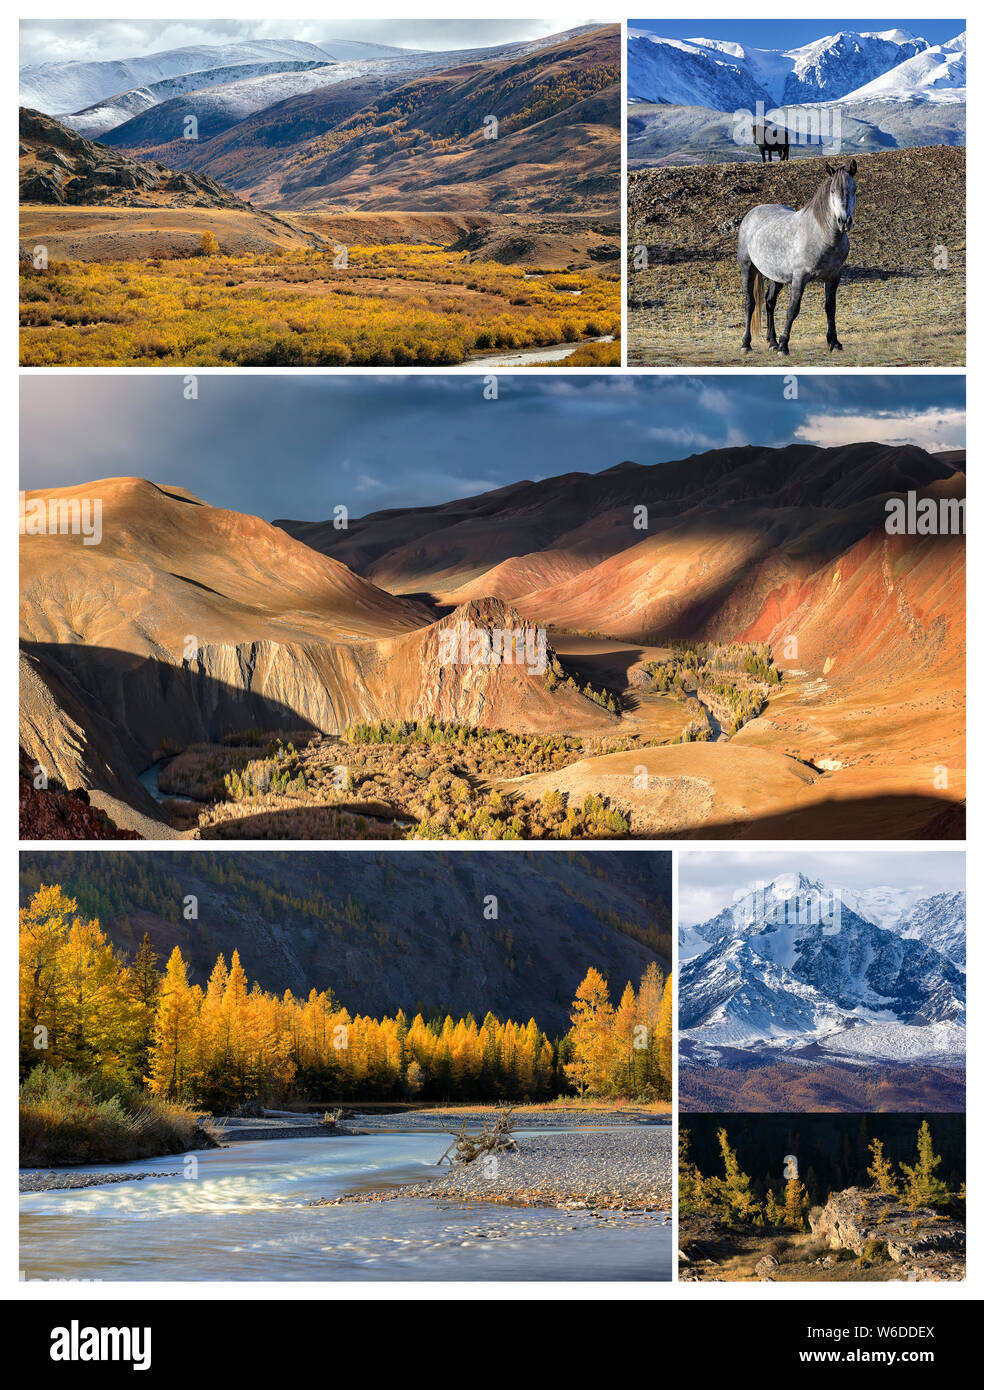 Collage de photos avec l'espace pour le texte. Paysage d'automne avec Aktru river et le pic de Caratash Chuya, Rivière, montagnes et steppes Kurai, chevaux sauvages et Banque D'Images